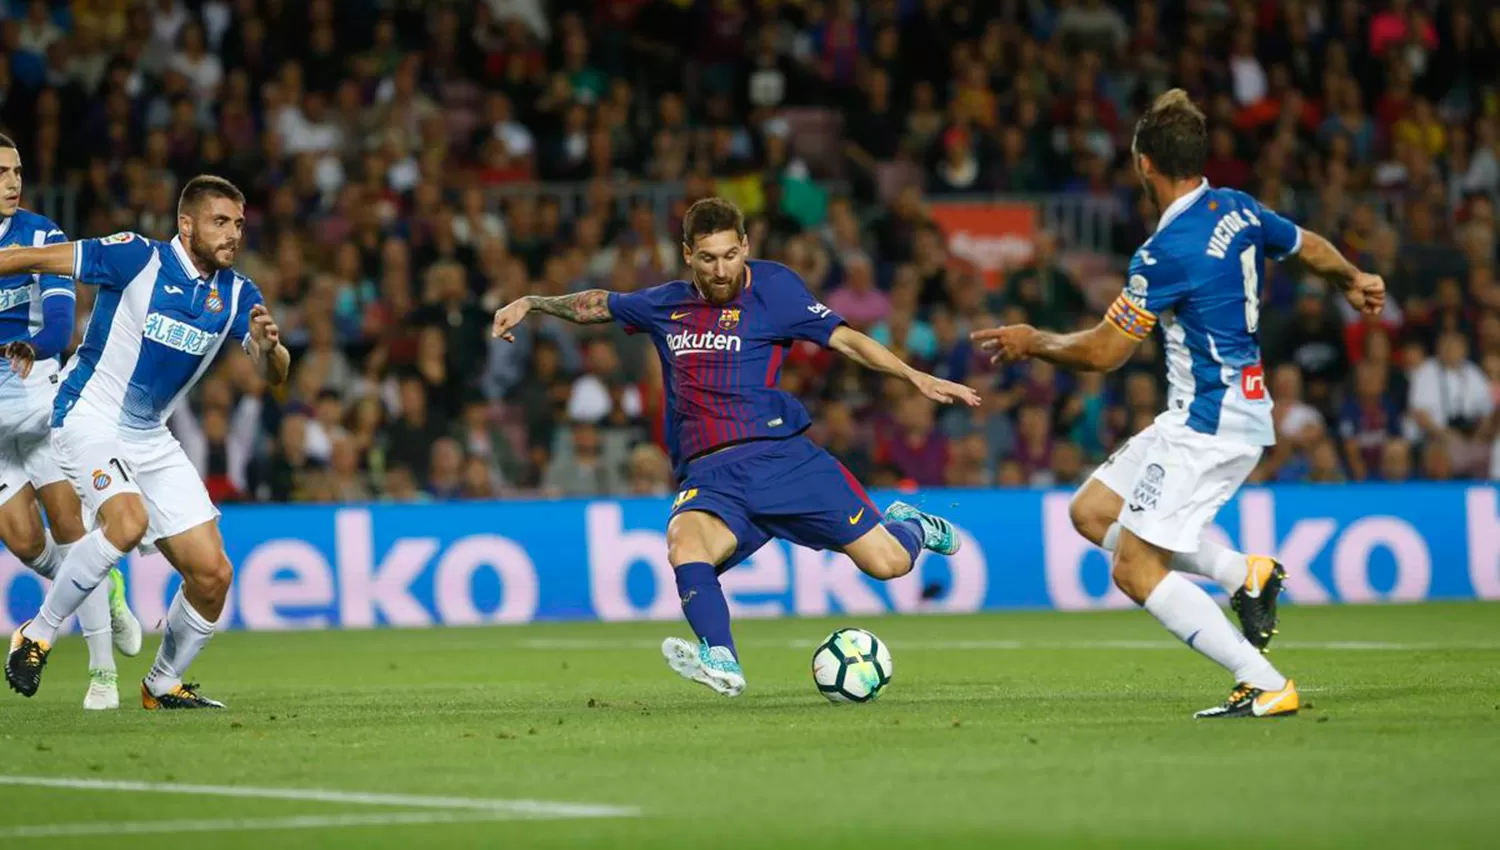 Así remató Messi para convertir el primer gol del clásico.
FOTO TOMADA DE TWITTER FC BARCELONA